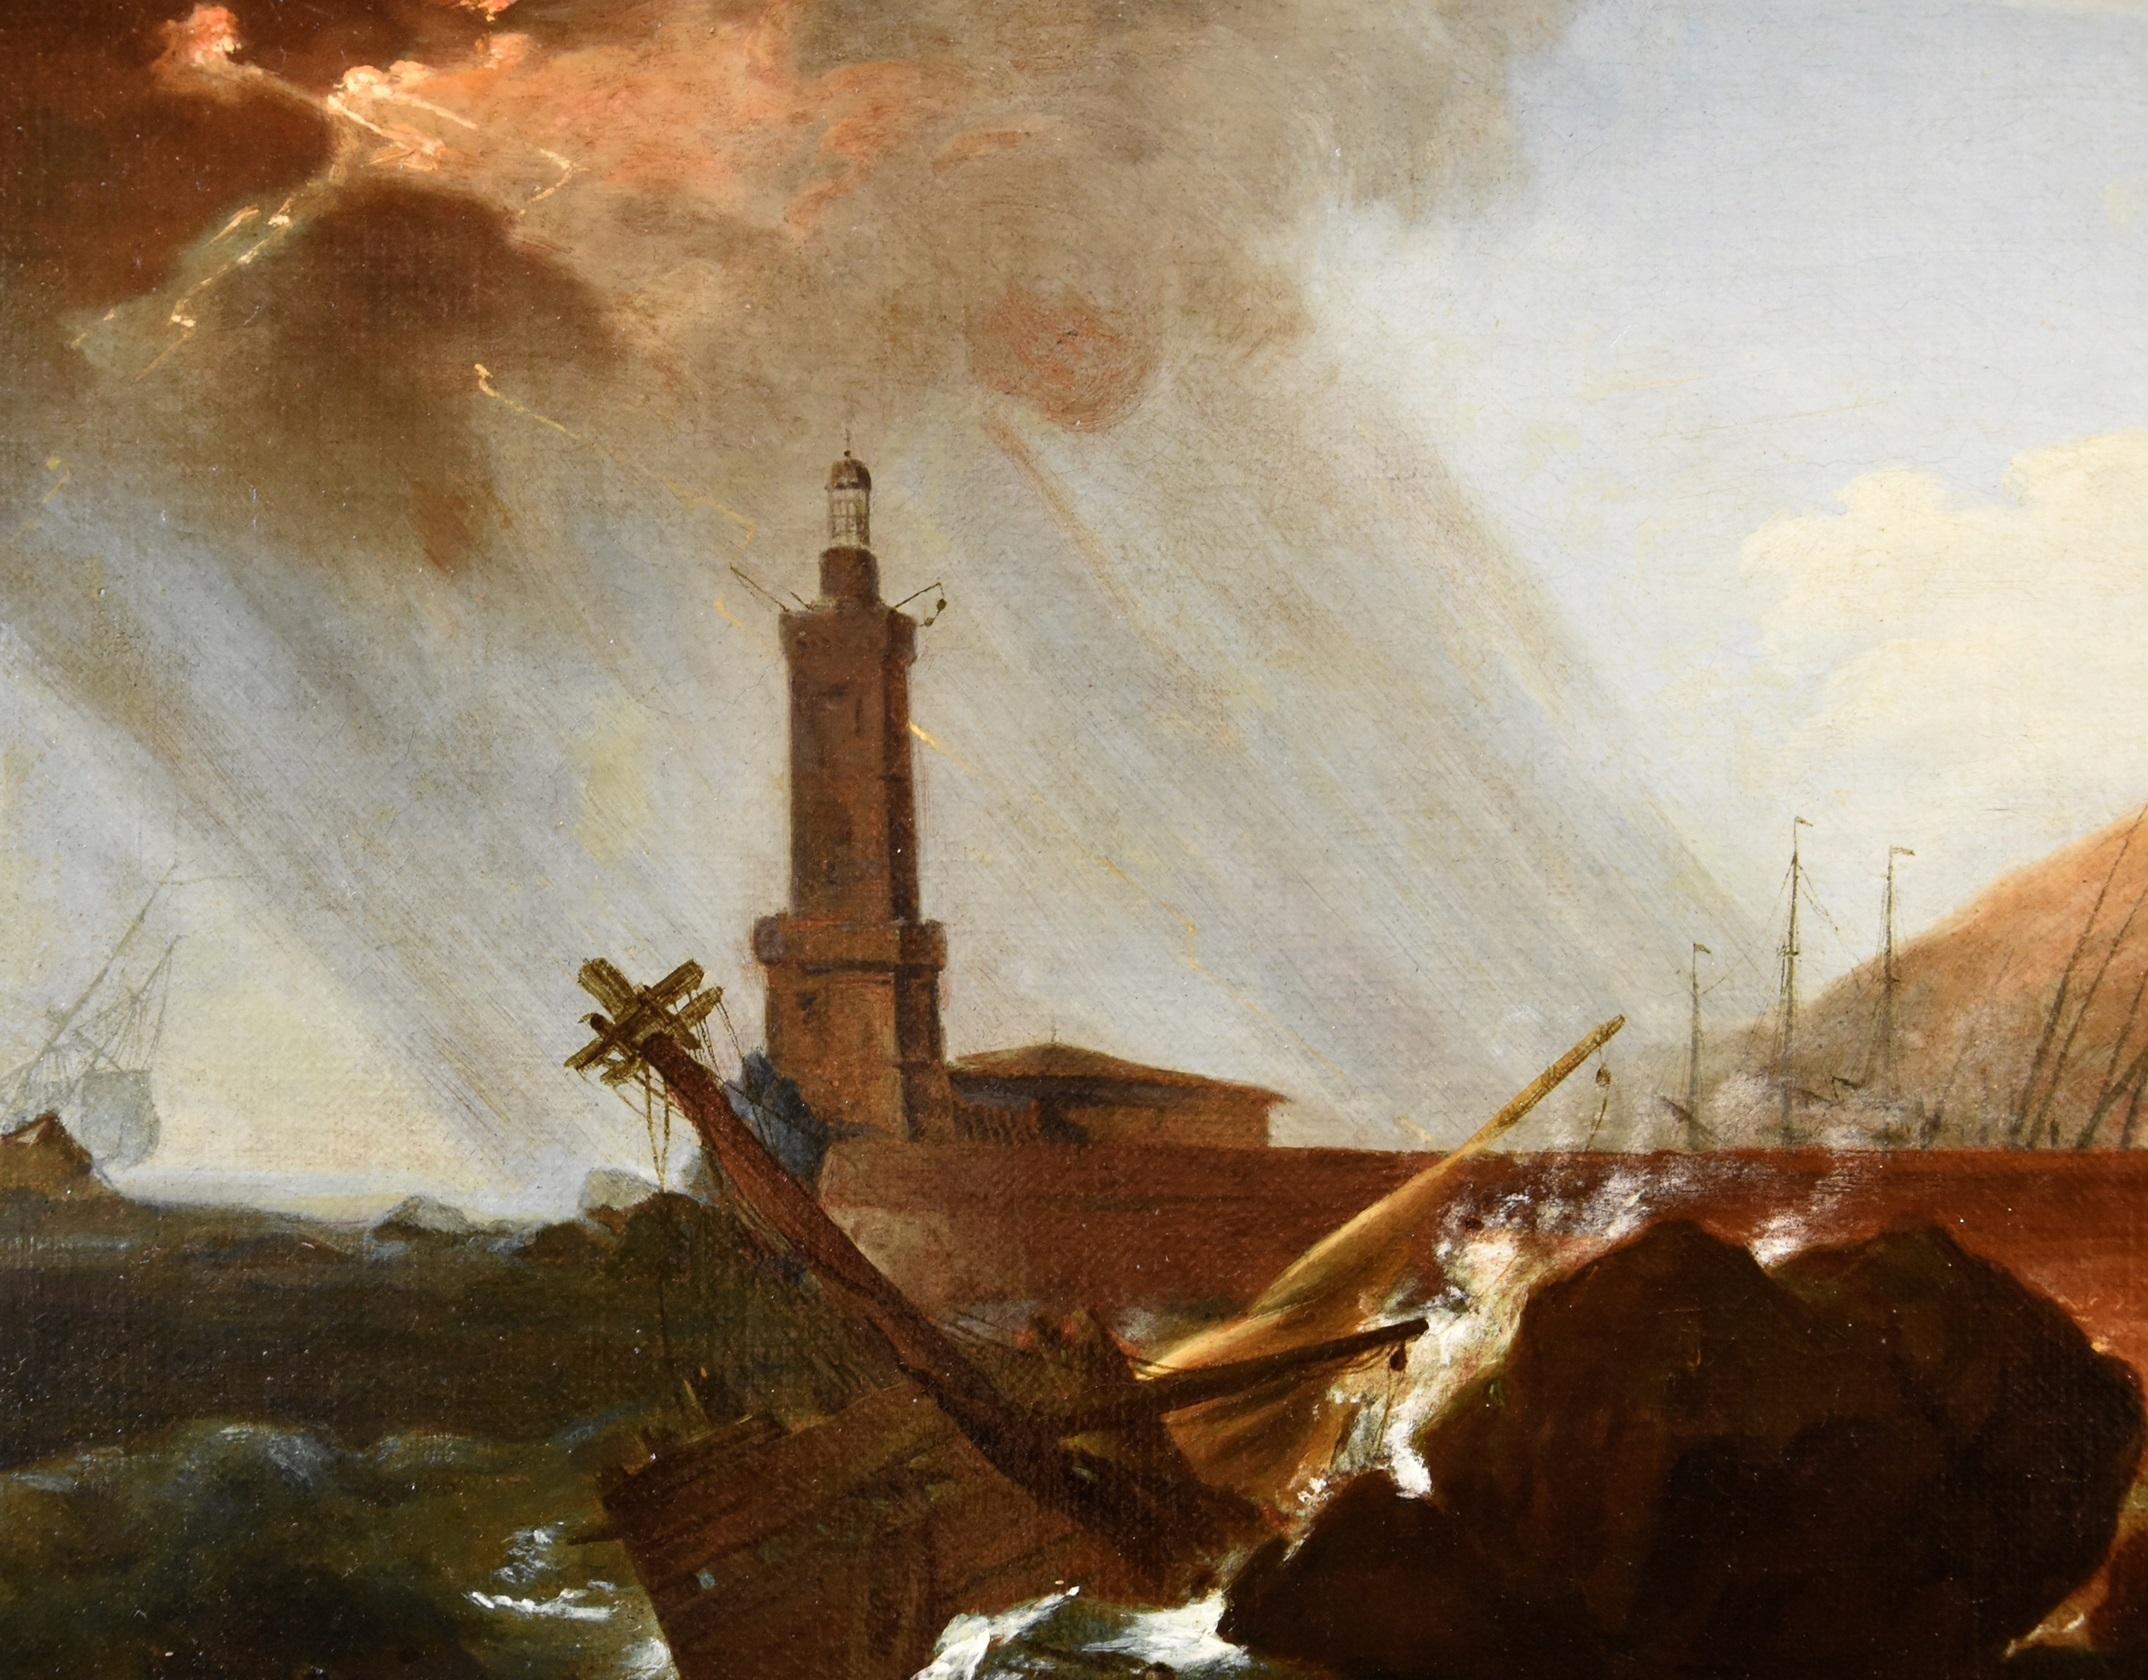 Claude-Joseph Vernet (Avignon, 1714 - Paris, 1789)
Workshop von

Der Sturm auf dem Leuchtturm

1750/60

Technik: Öl auf Leinwand
Abmessungen: 48 x 67 cm / gerahmt 77 x 93 cm


Wir teilen uns ein sehr ansprechendes Werk, ein prächtiges Marineschiff,